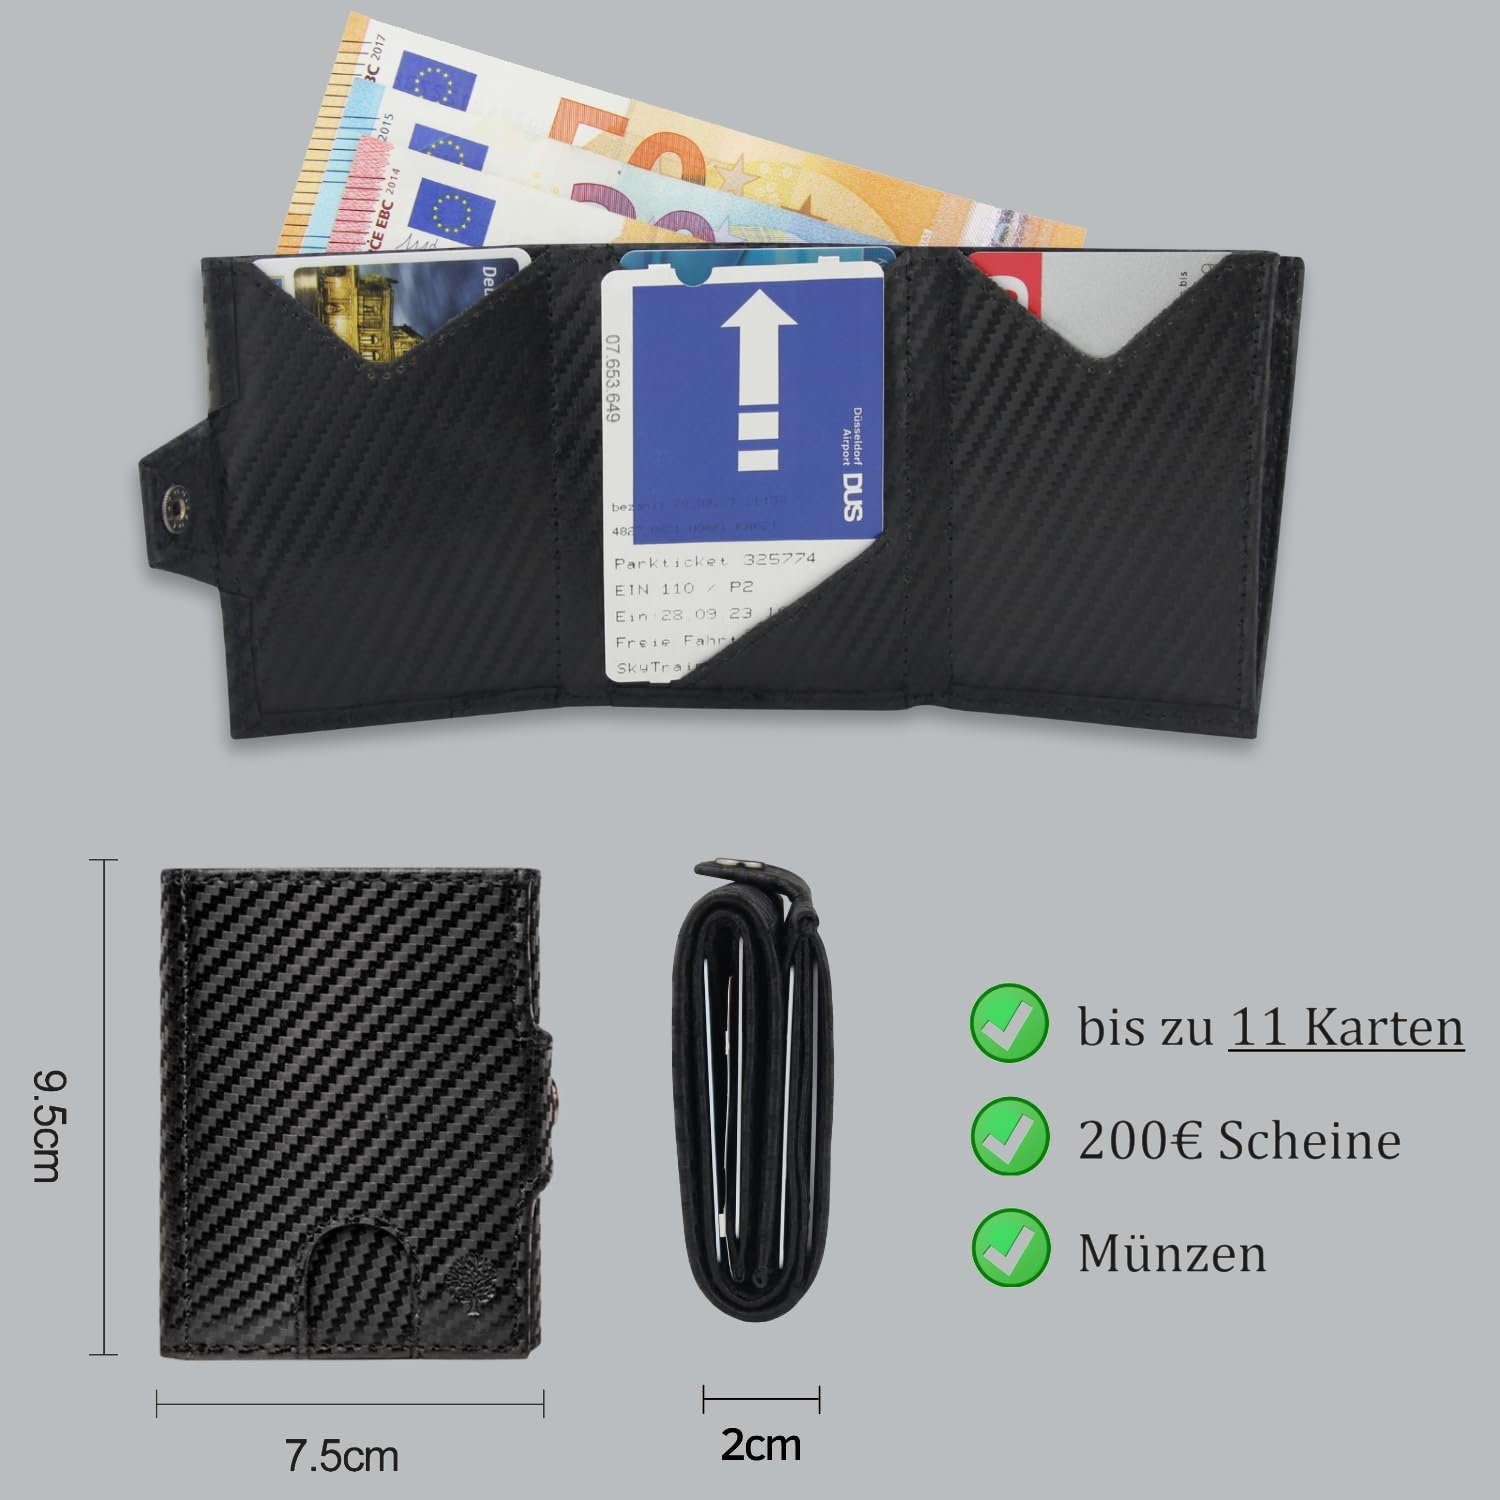 Frentree Mini Geldbörse Slim Wallet Portemonnaie - - Geldbeutel echtem Münzfach aus Geldbörse Klein mit Carbon Leder - Kartenetui mit Echtleder Mini, RFID-Schutz